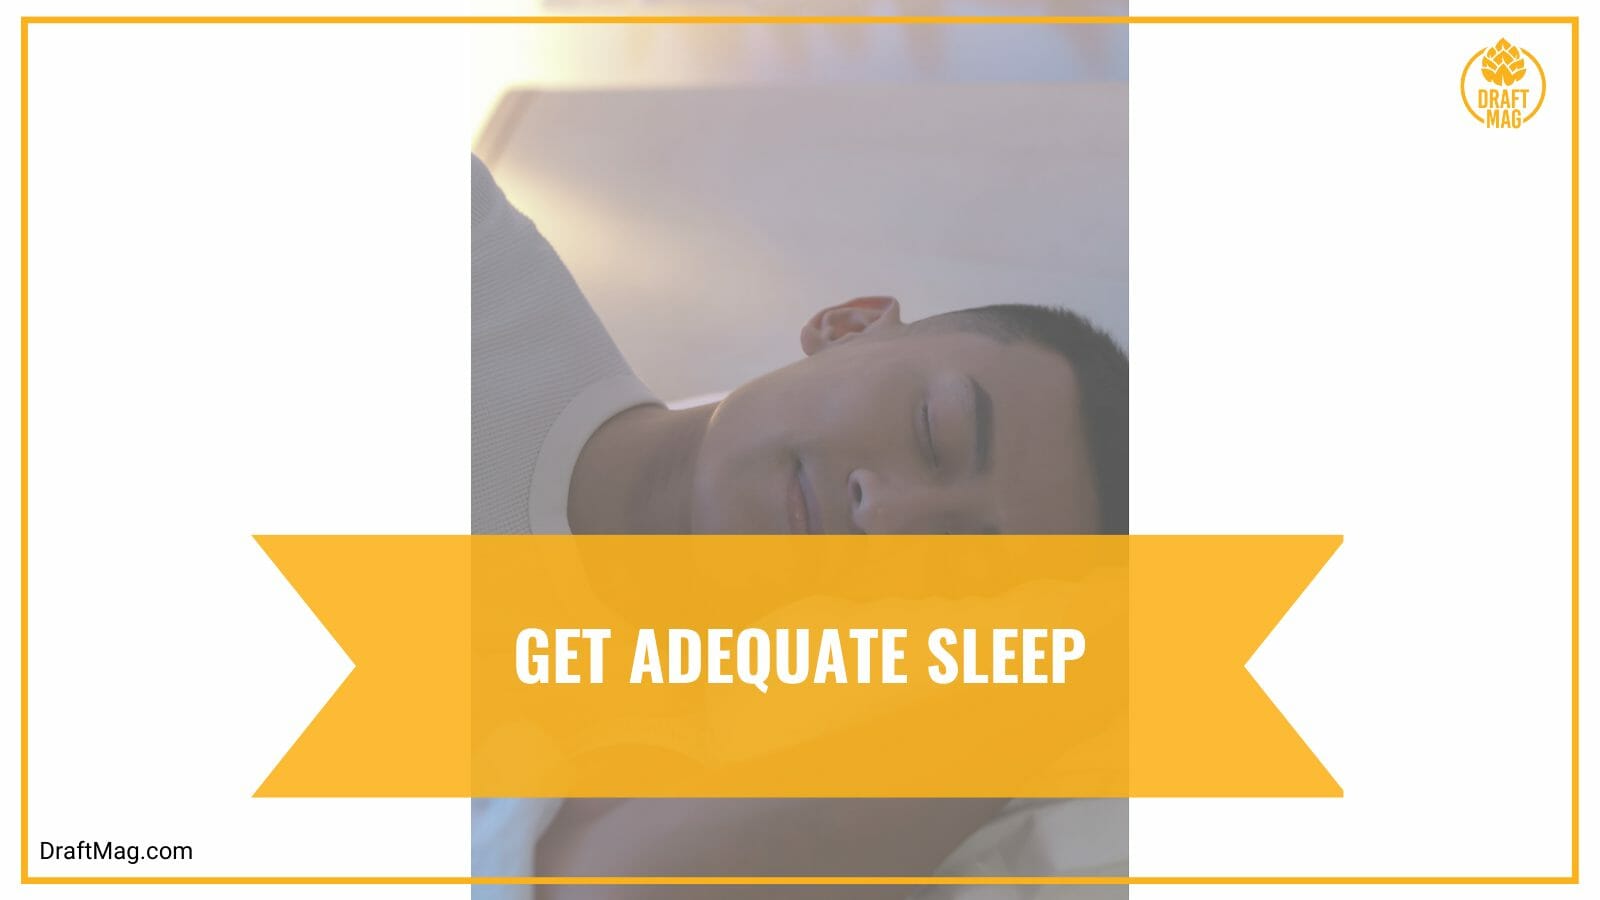 Get adequate sleep